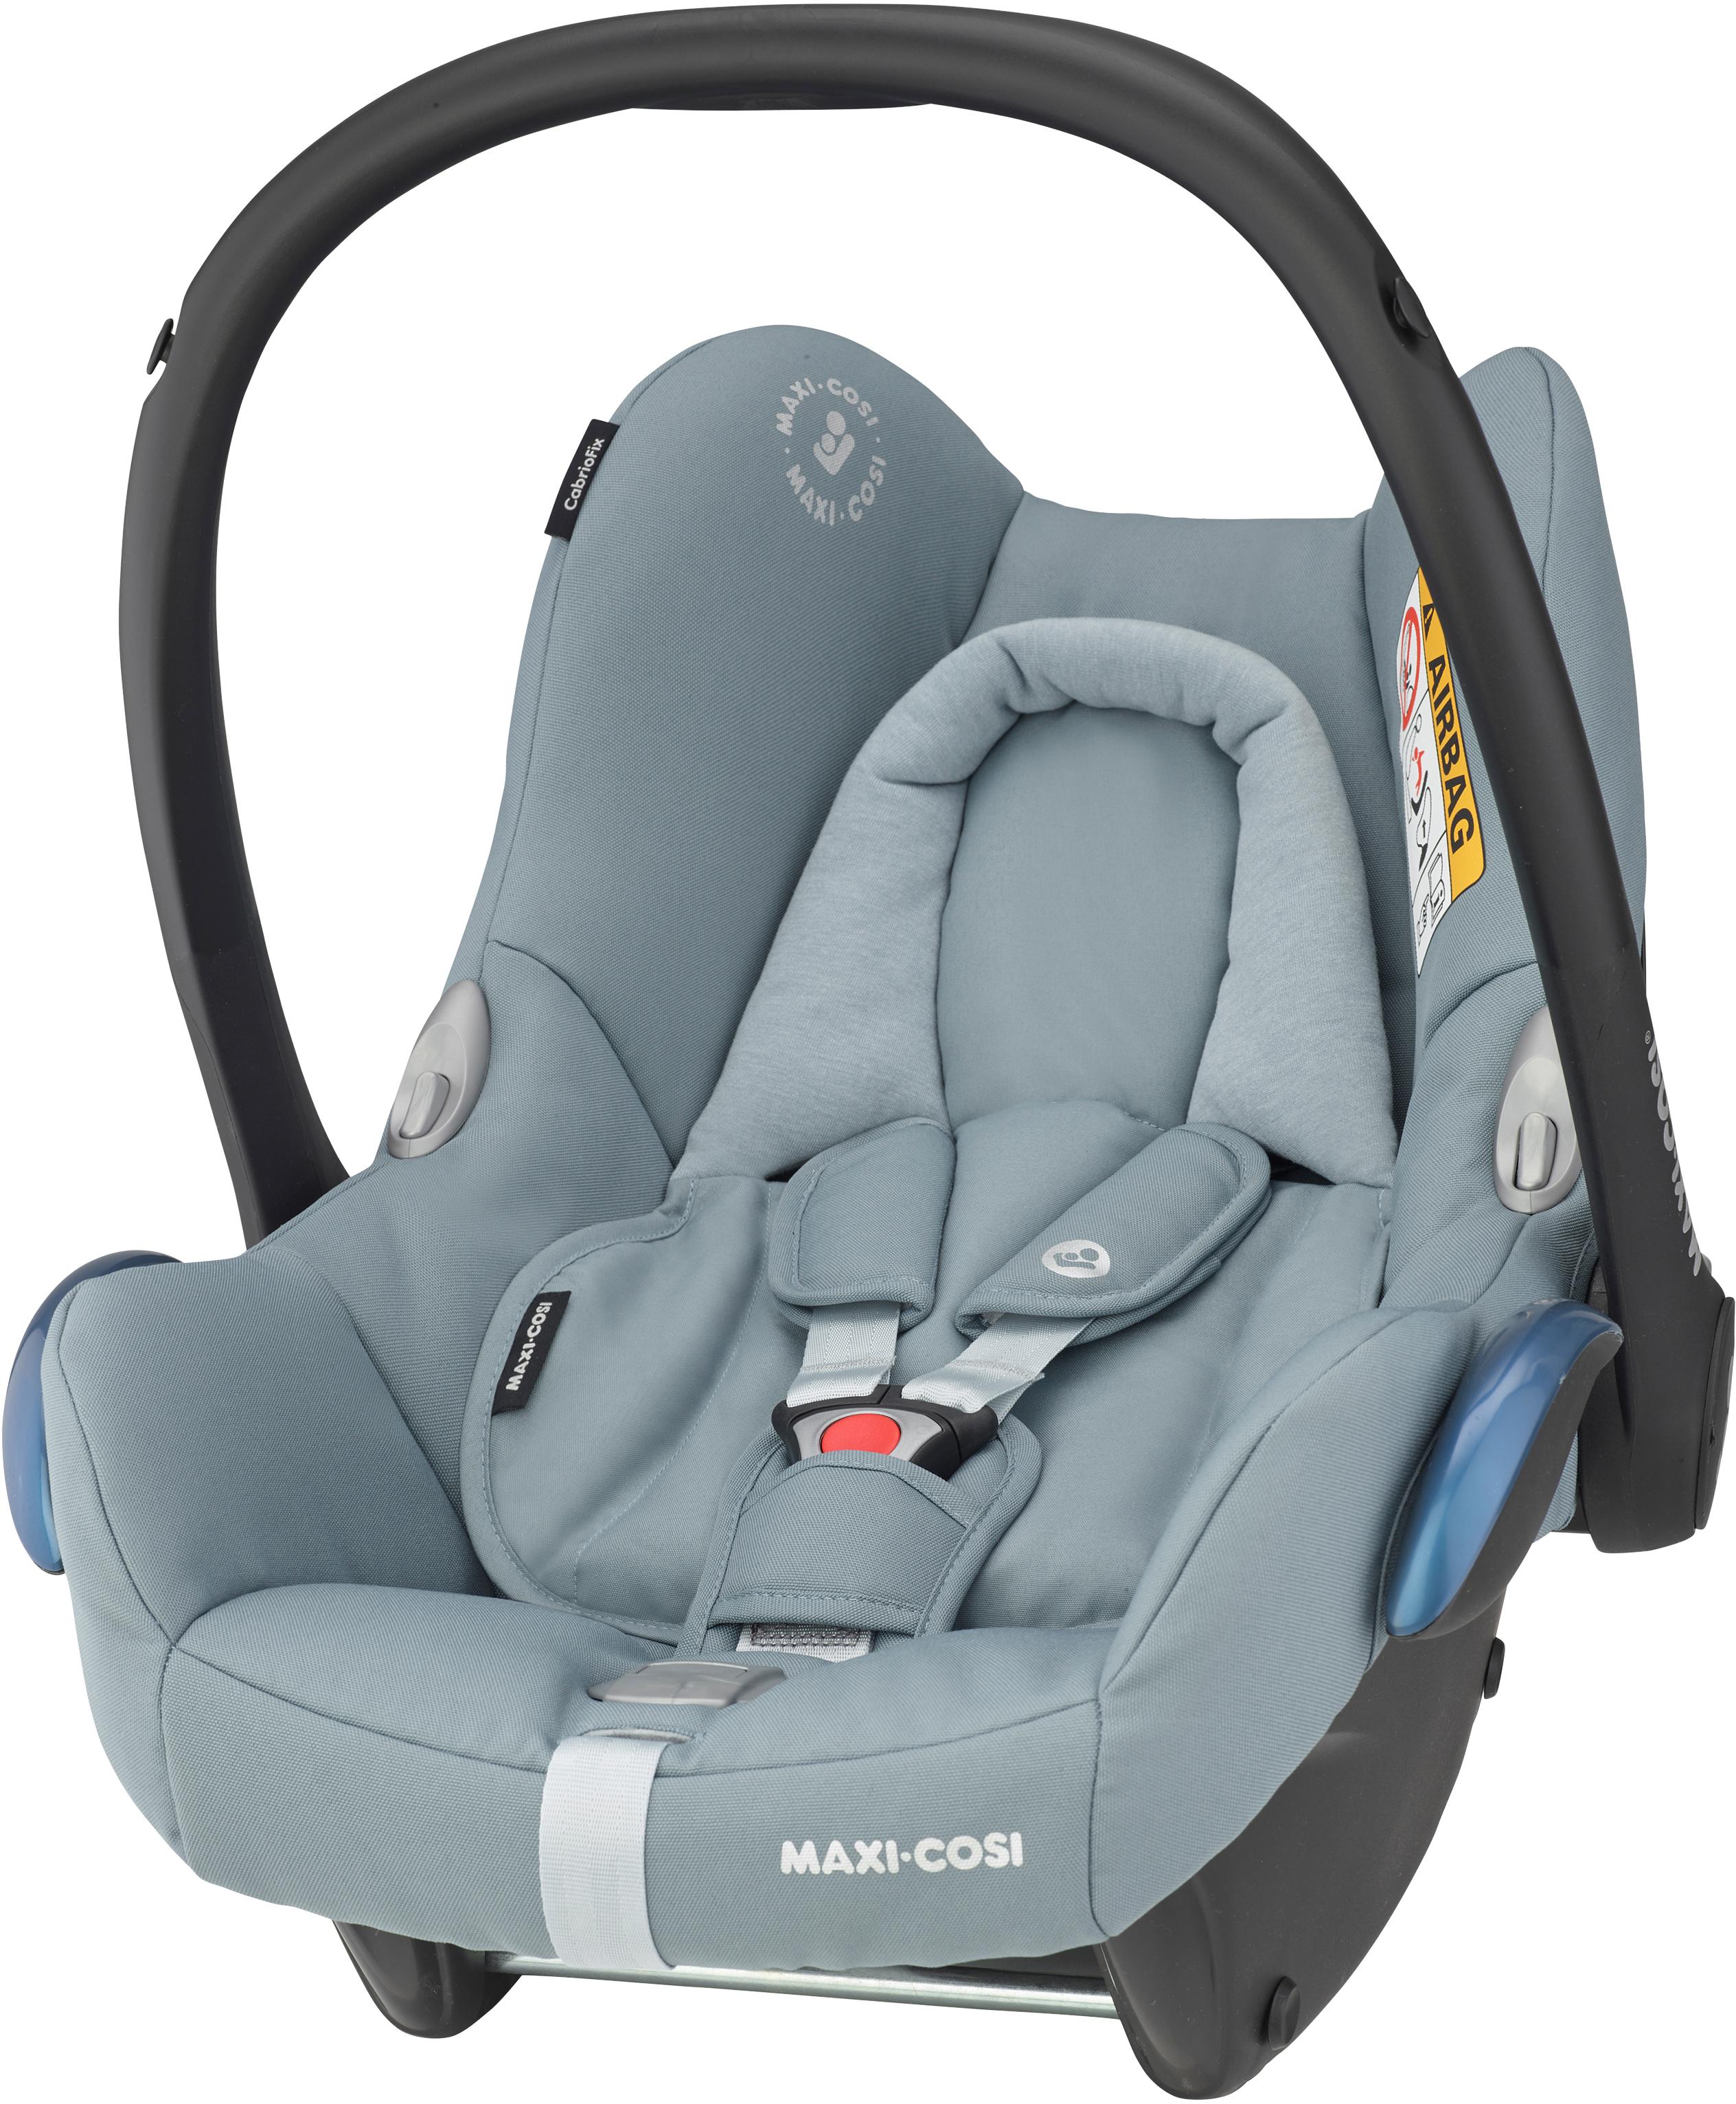 Maxi Cosi Cabriofix Infant Car Seat, Essential Grey